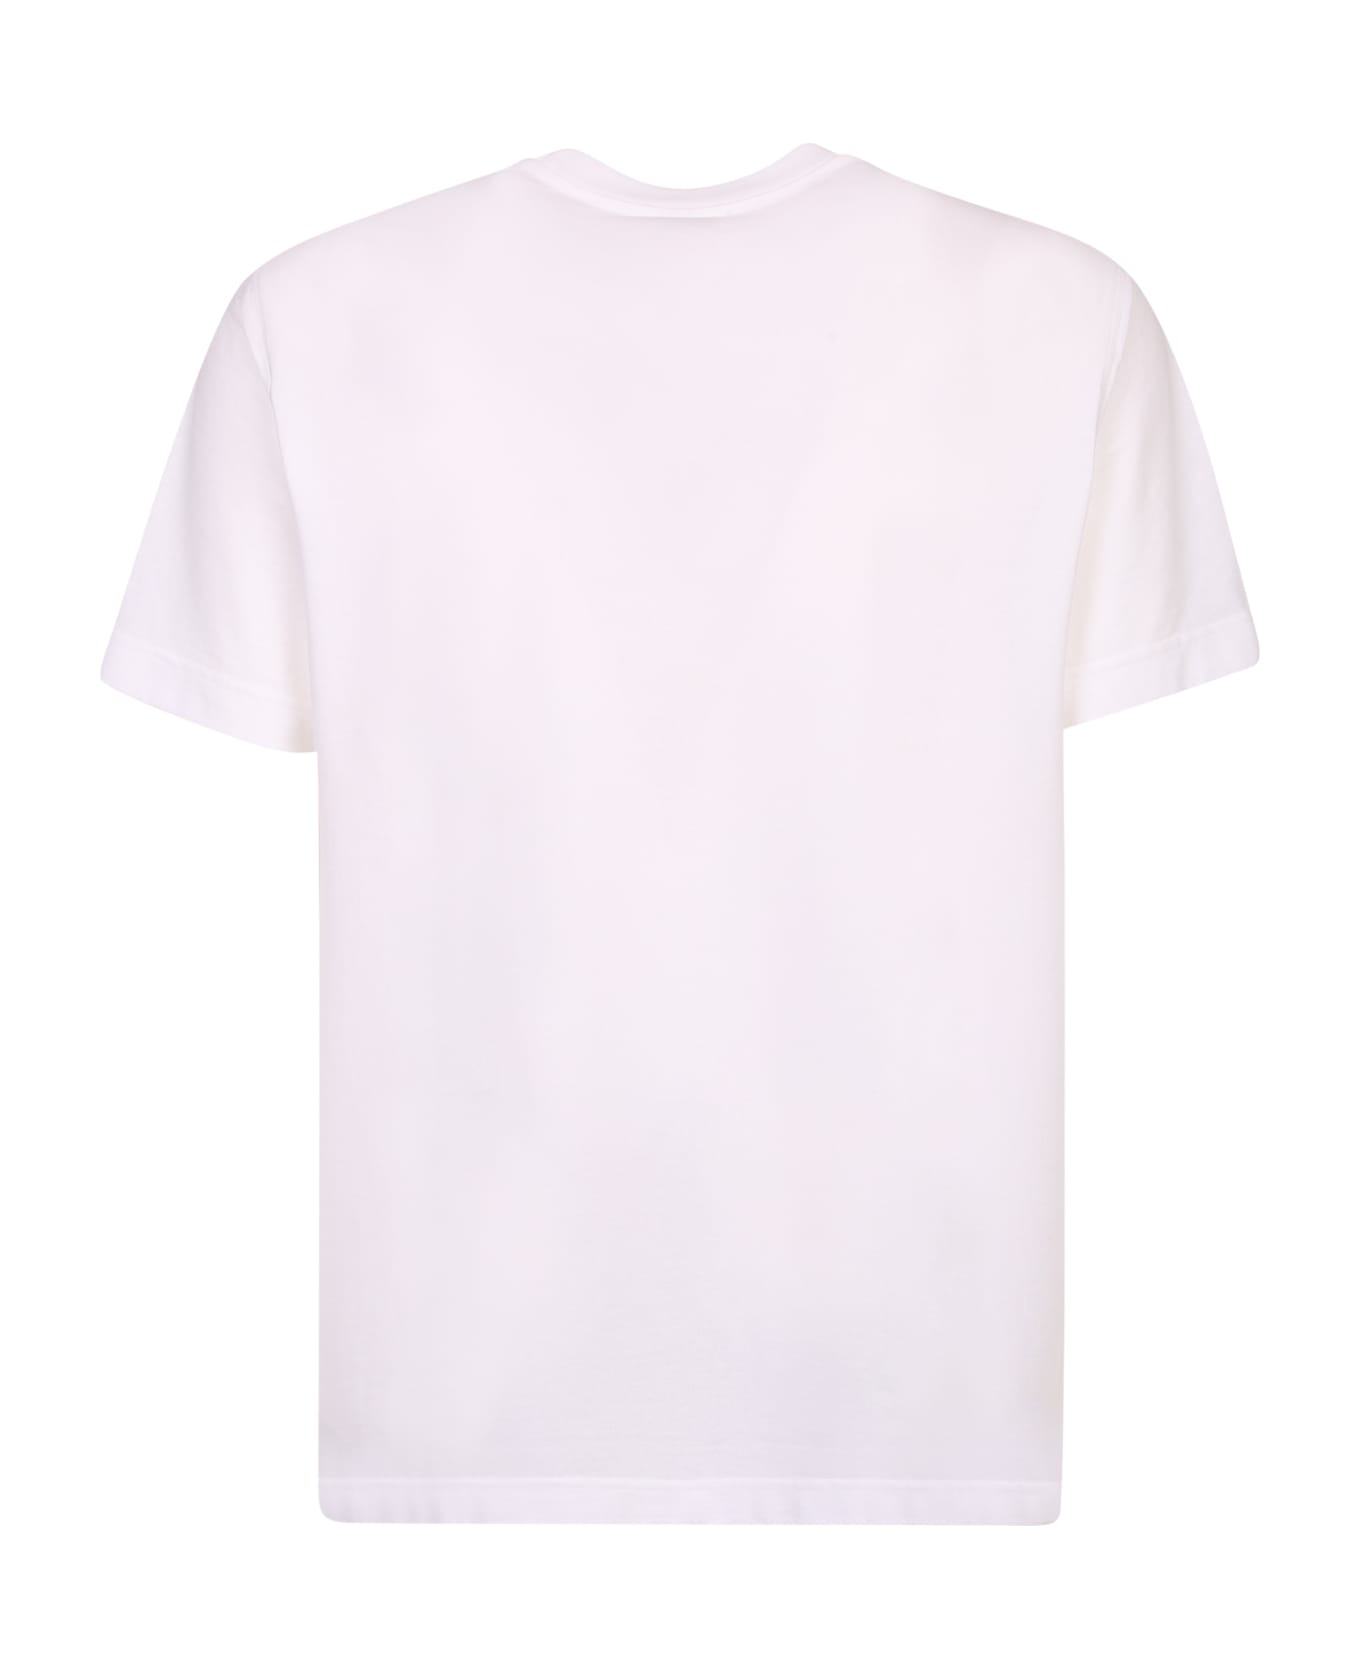 Zanone Patch T-shirt - White